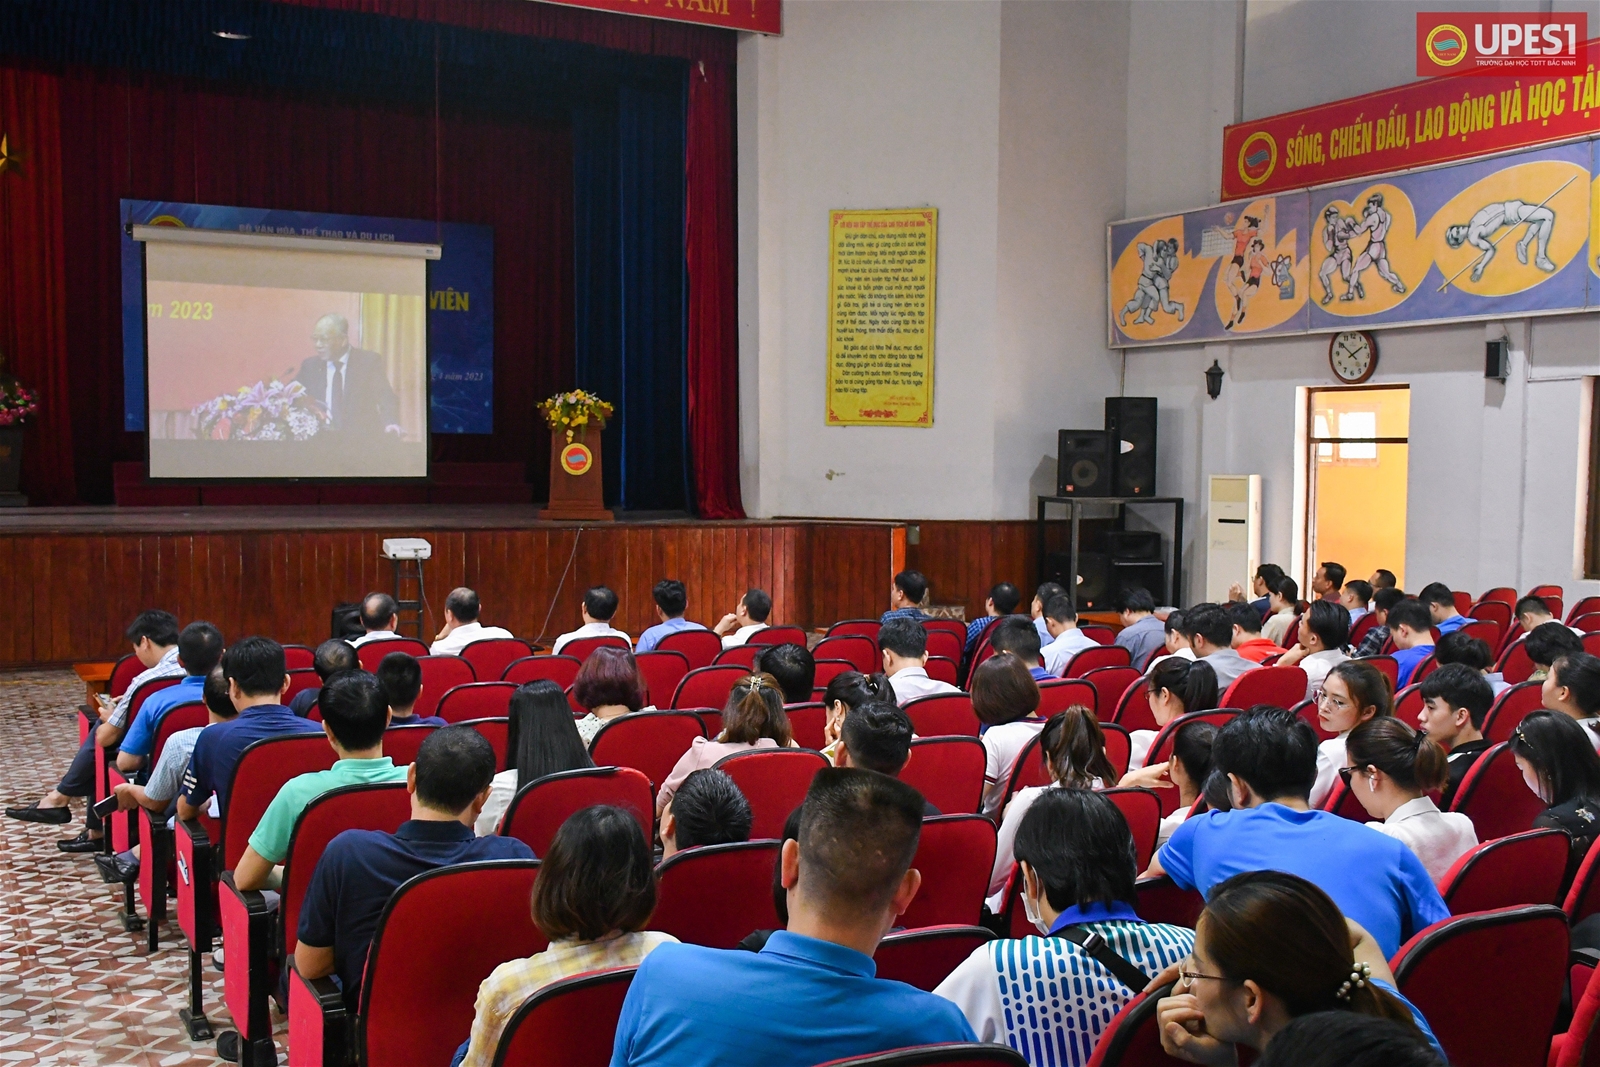 Trường Đại học TDTT Bắc Ninh tổ chức hội nghị học tập và triển khai thực hiện Chuyên đề năm 2023